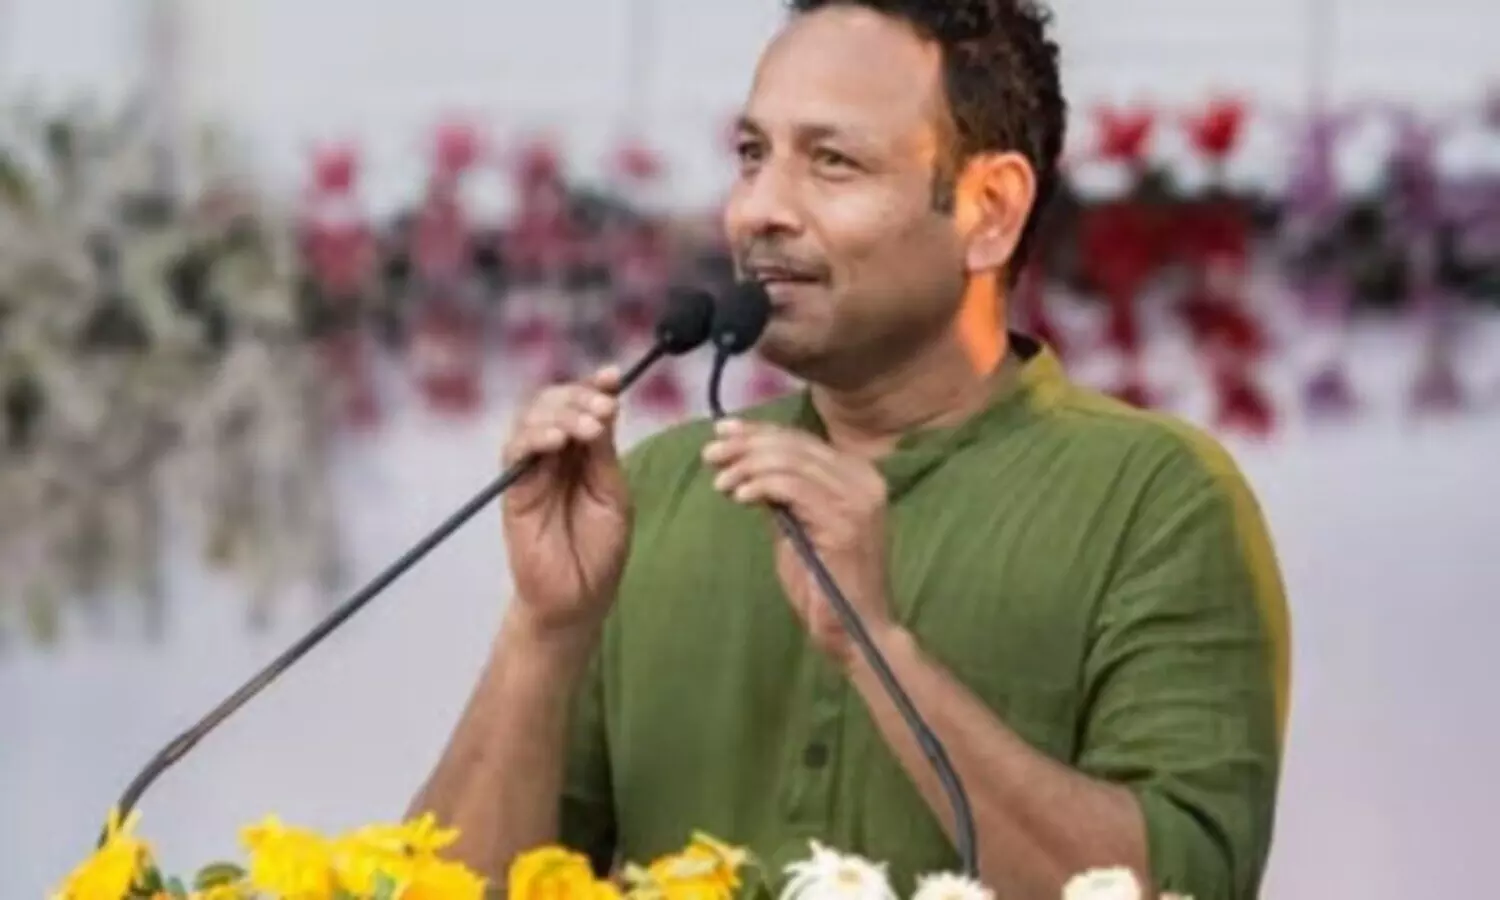 Anurag Bhadauria